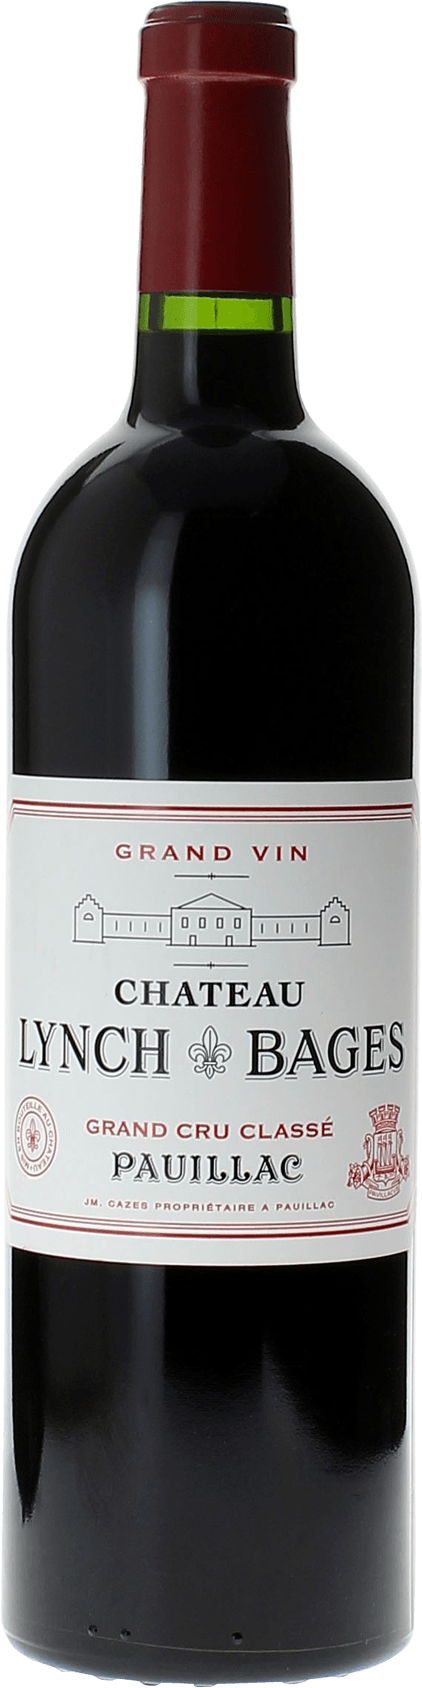 Lynch bages 2002 5 me Grand cru class Pauillac, Bordeaux rouge